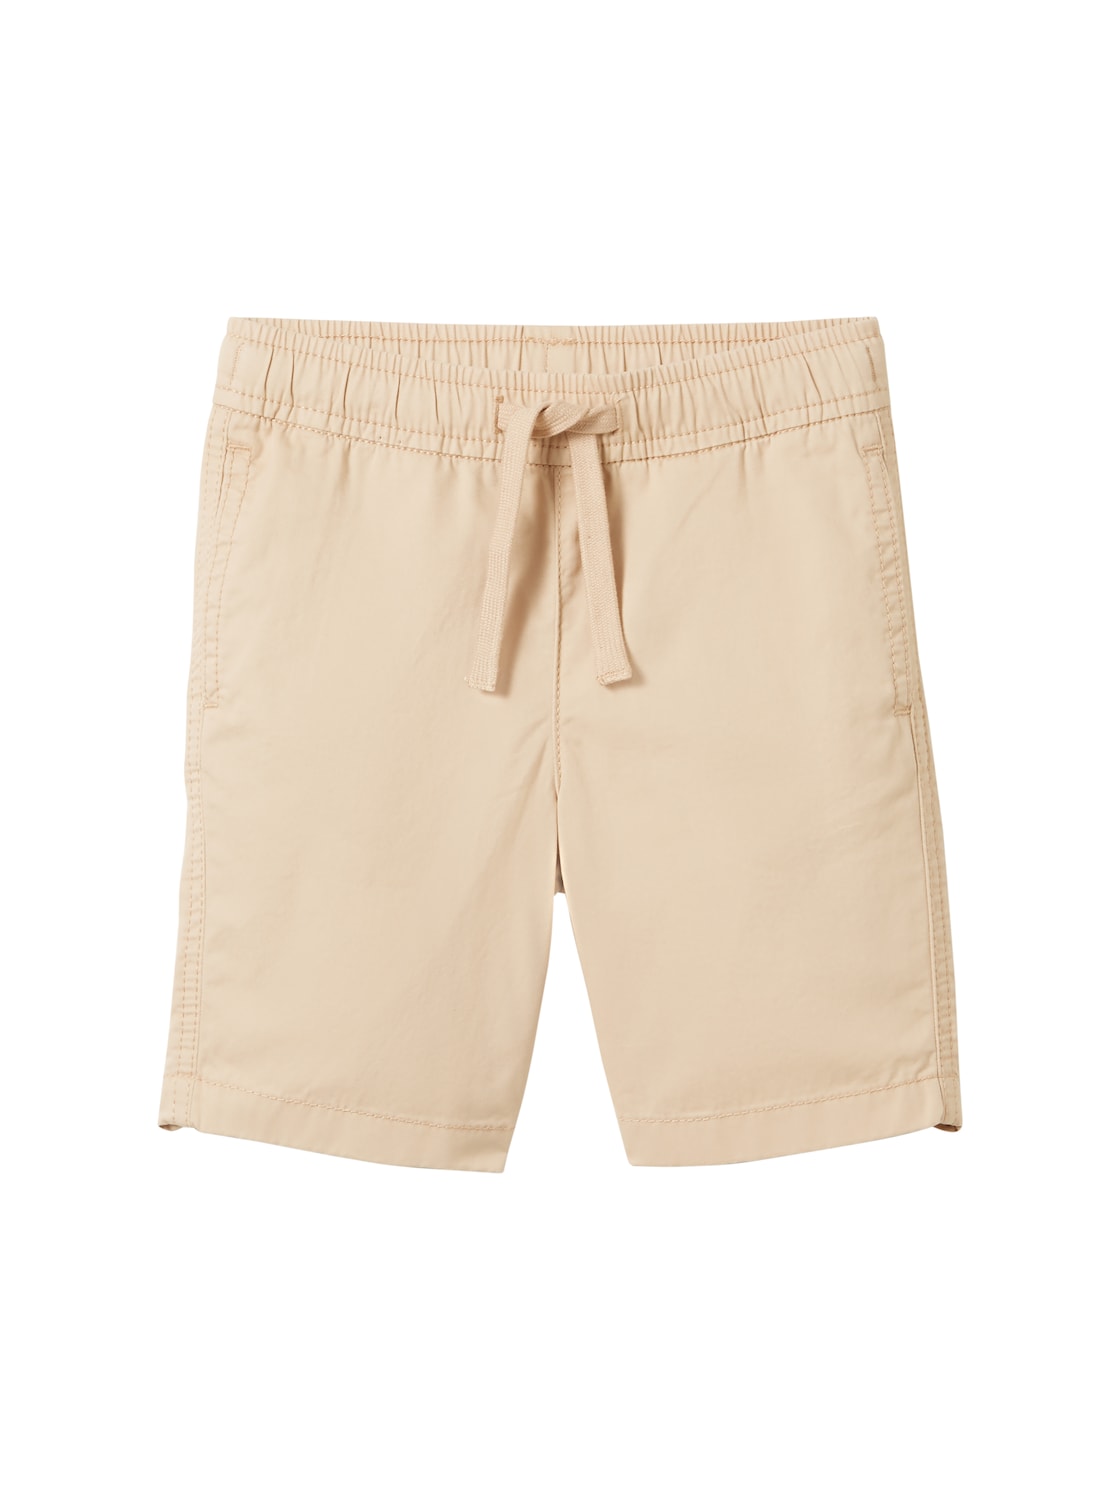 TOM TAILOR Jungen Basic Shorts, braun, Uni, Gr. 122 von Tom Tailor